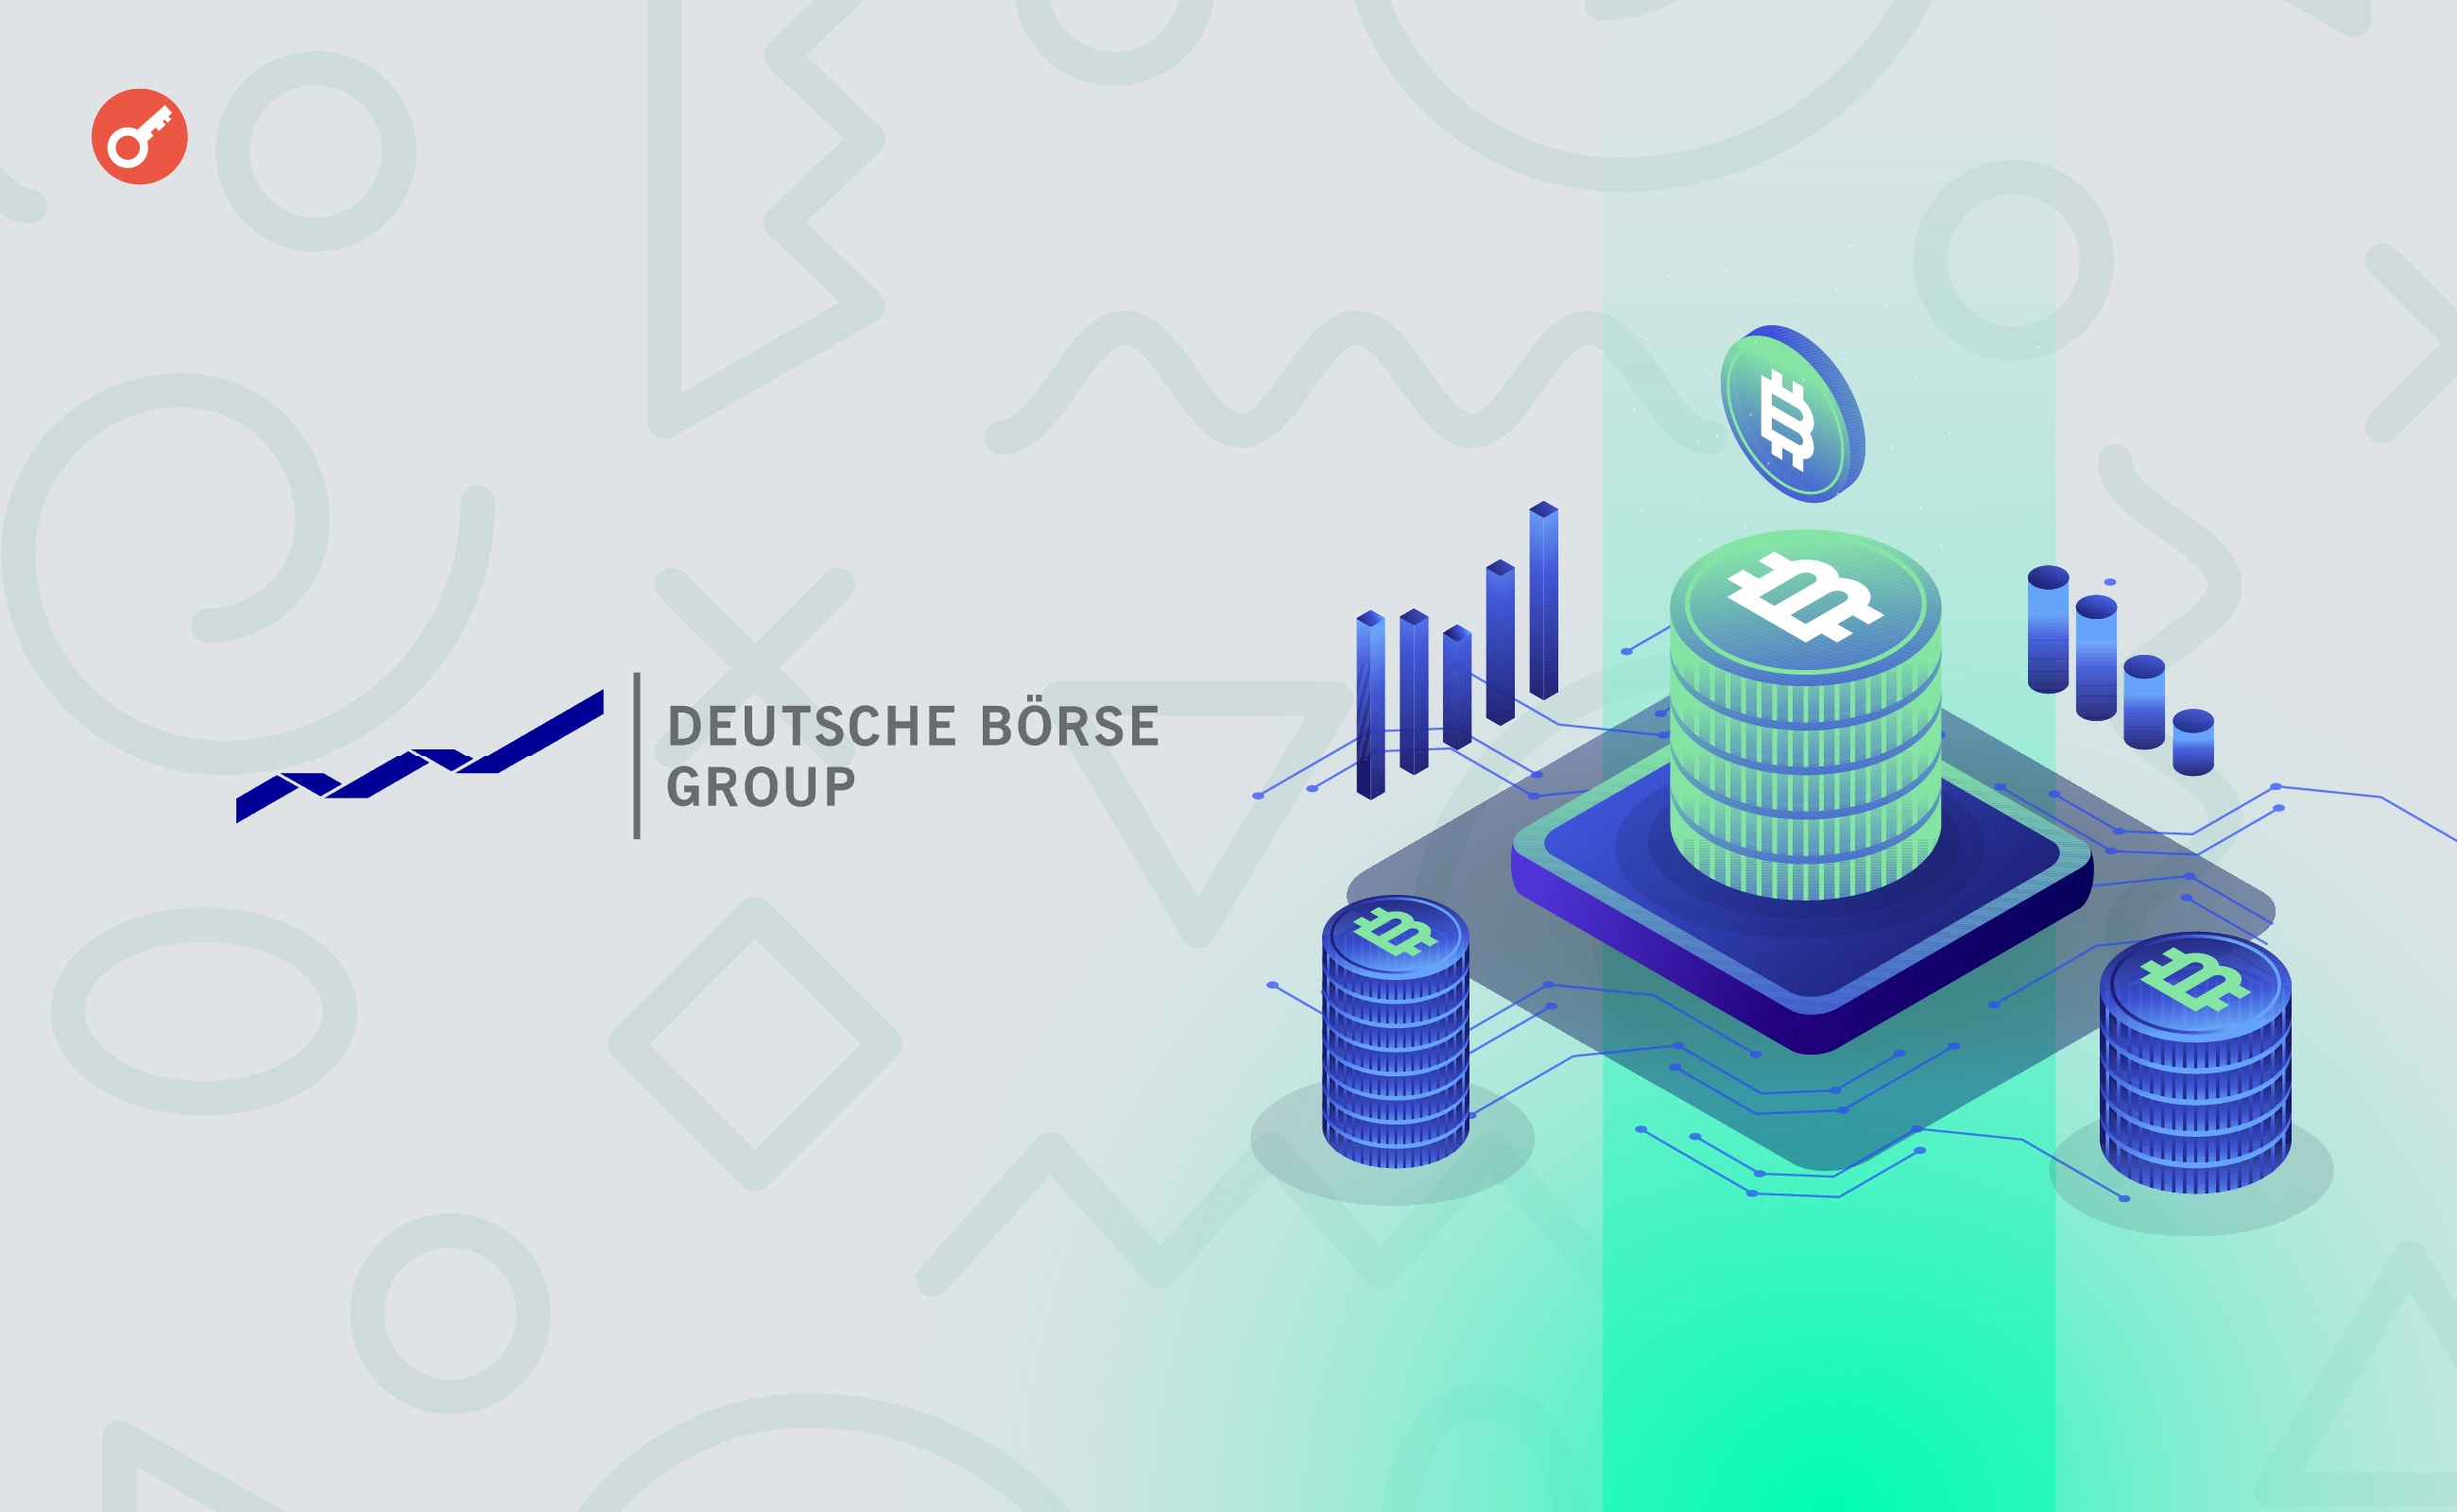 Deutsche Börse запустила платформу для торговли криптовалютами. Заглавный коллаж новости.